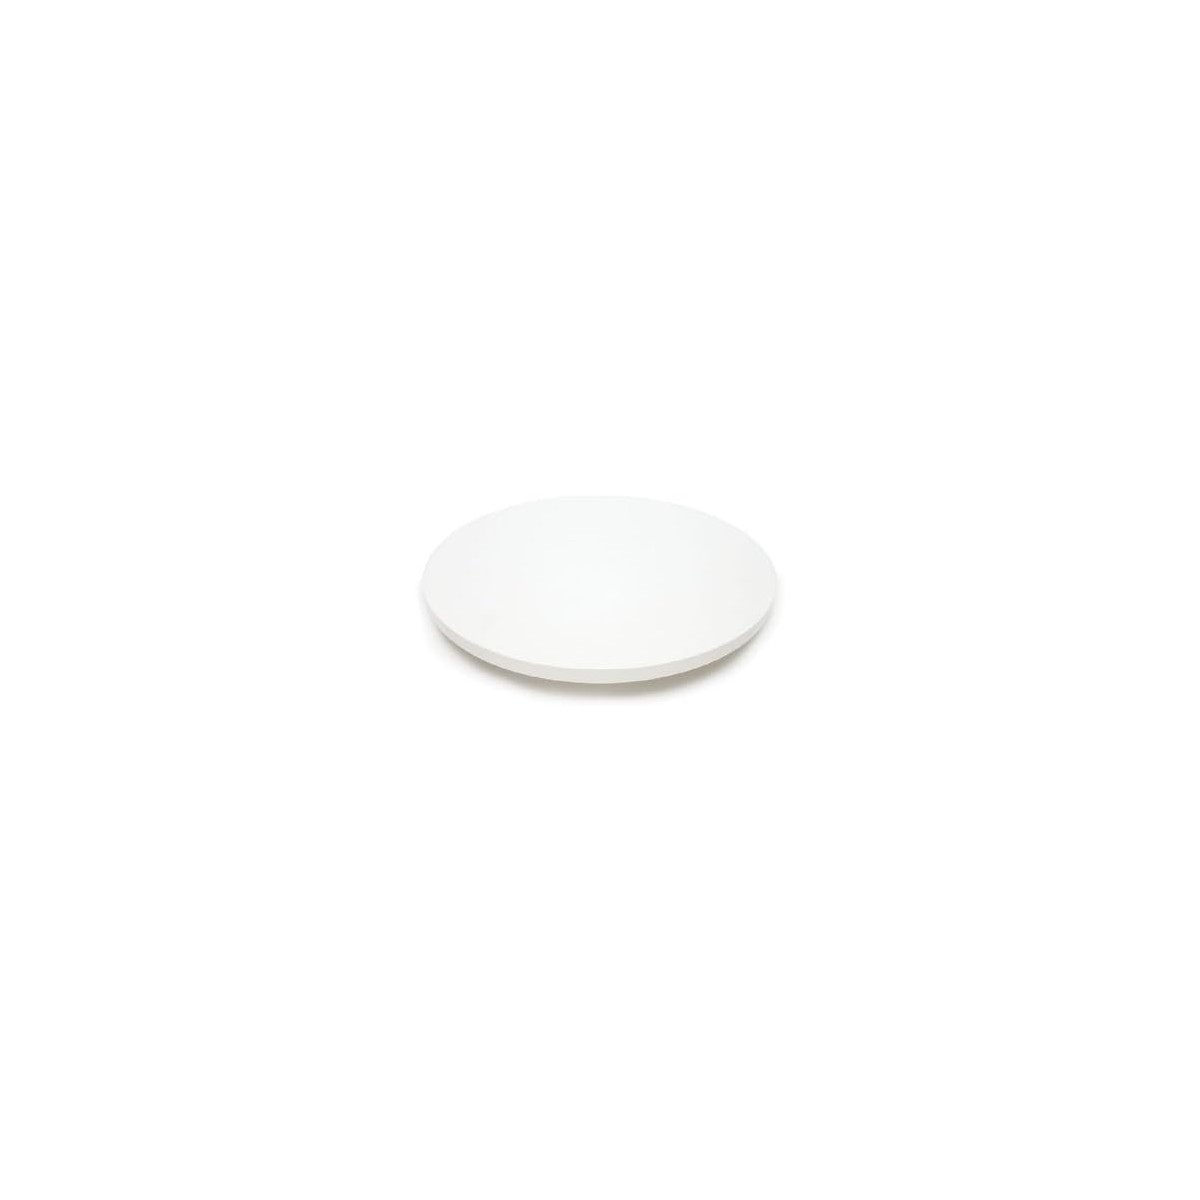 Disco in polistirolo Tondo da 2,5cm D35 x H2,5 , forma circolare, in EPS